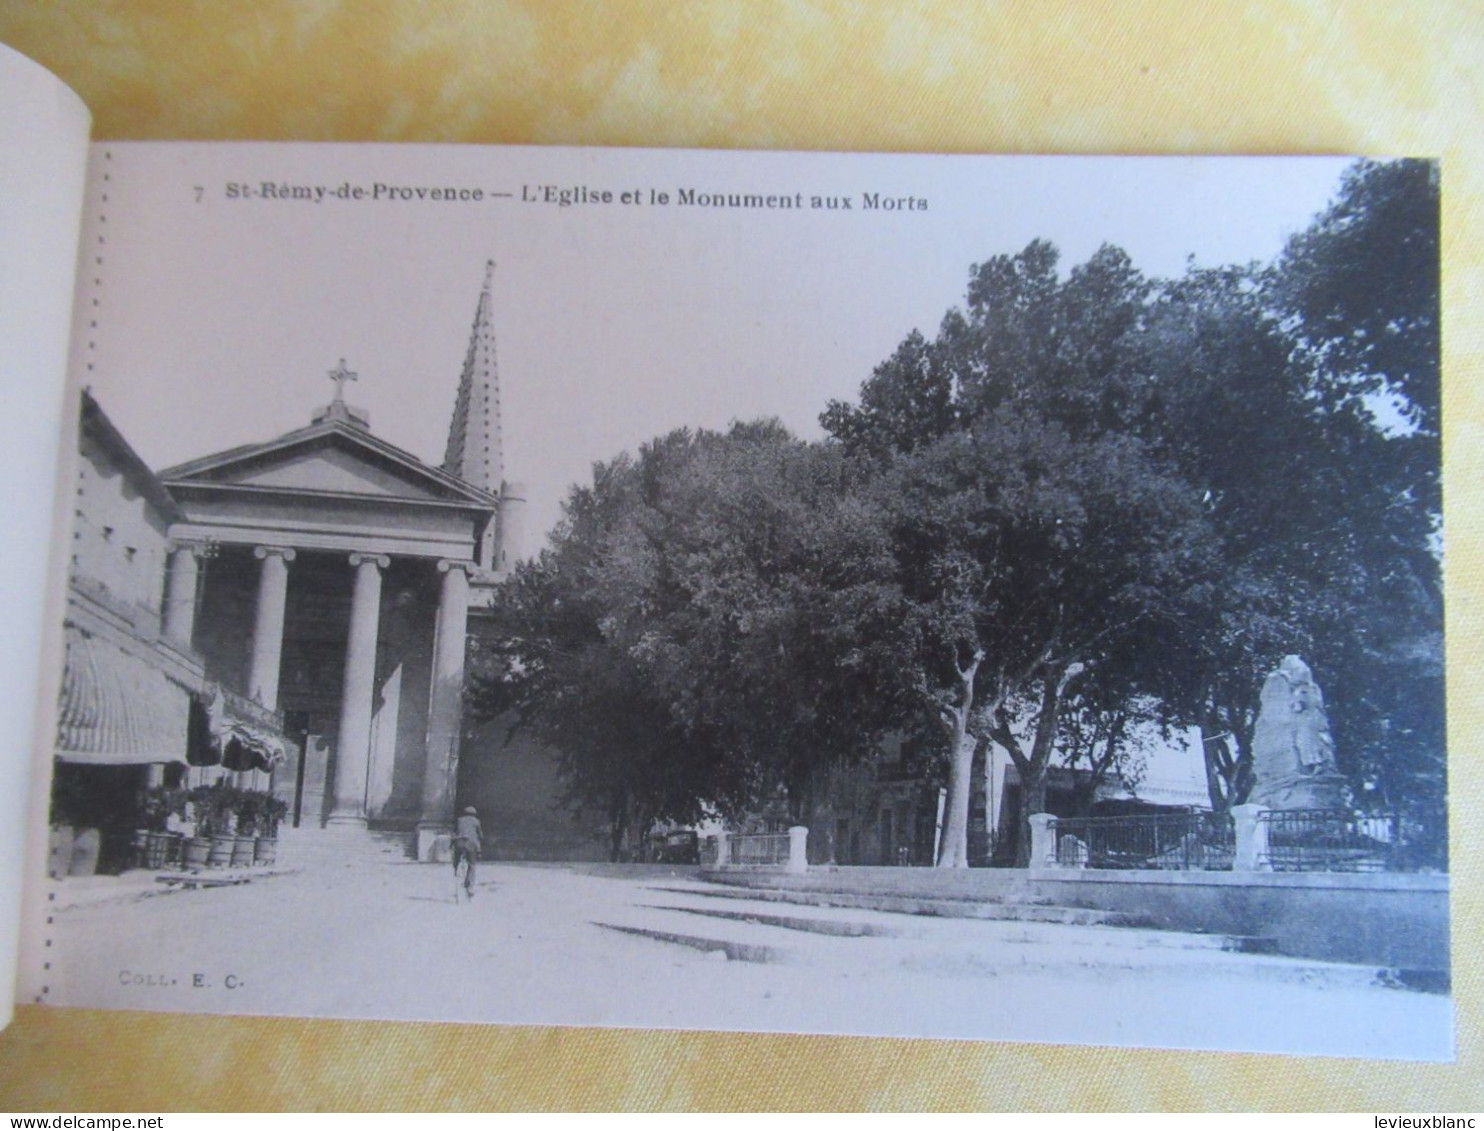 12 Cartes Postales Détachables/" Saint Rémy De Provence"/ Coll EC / Vers 1920-1940               CPDIV394 - Saint-Remy-de-Provence